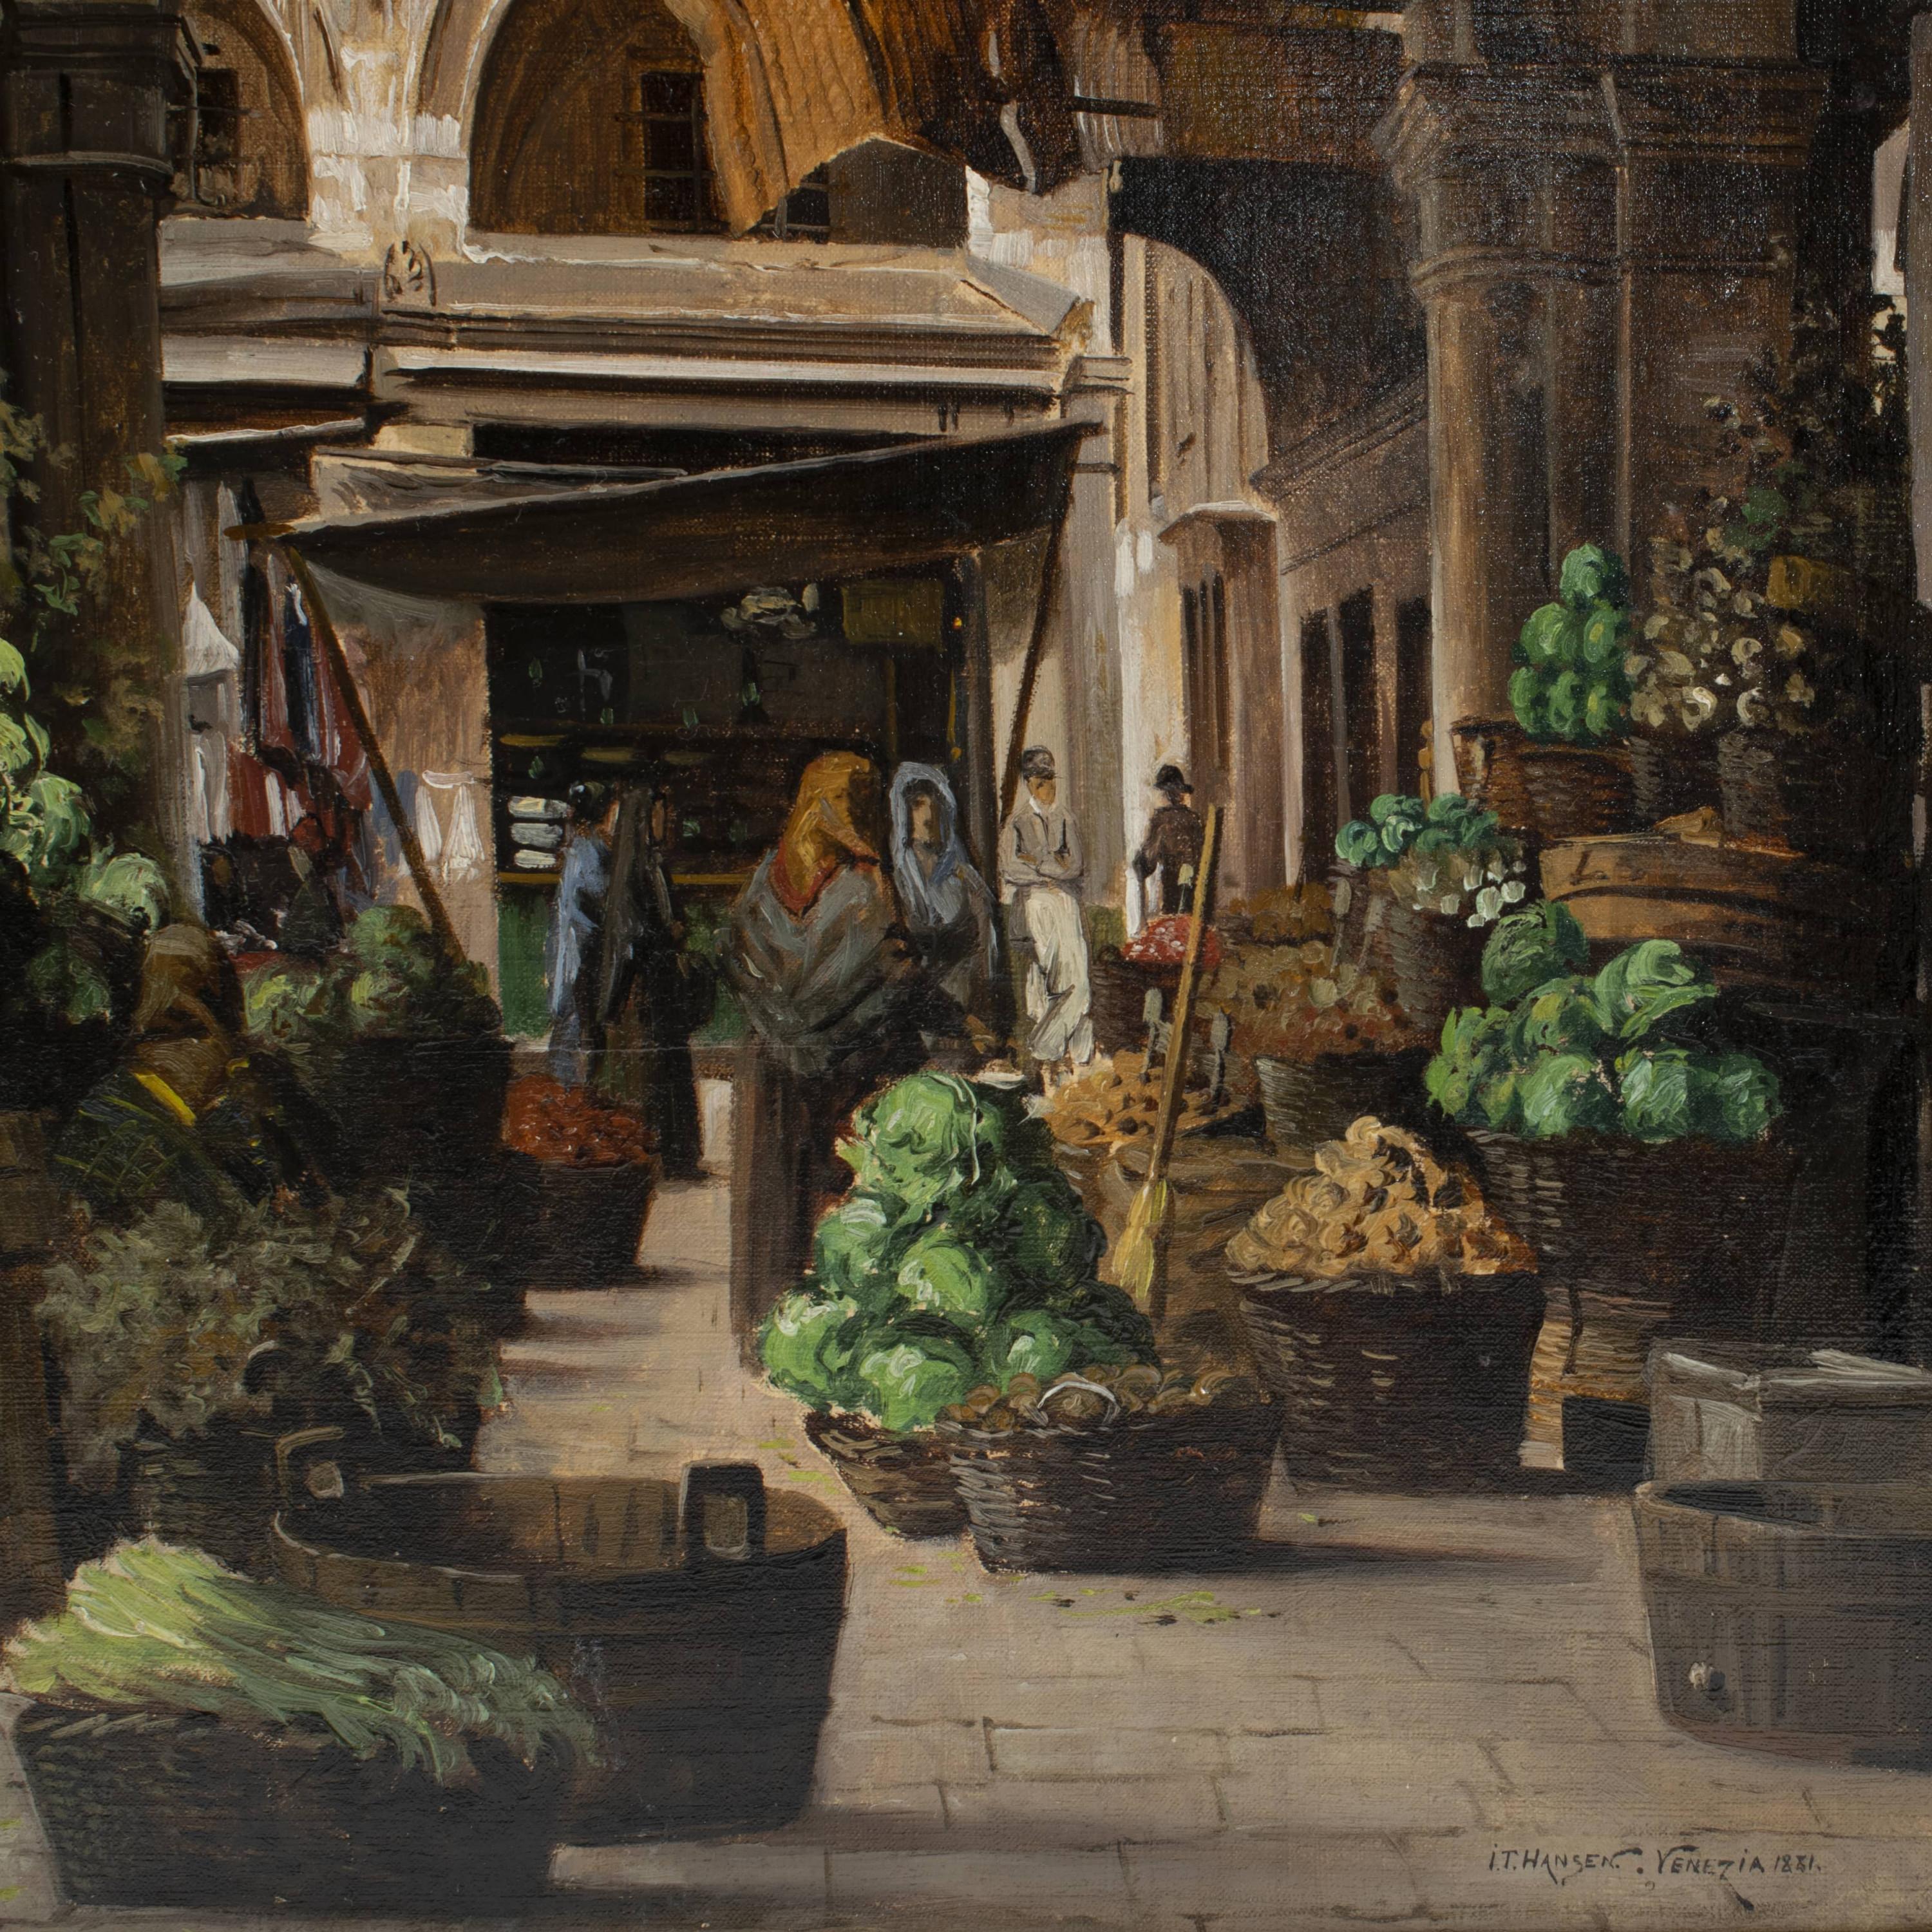 Danish I.T. Hansen, Market Scene From 